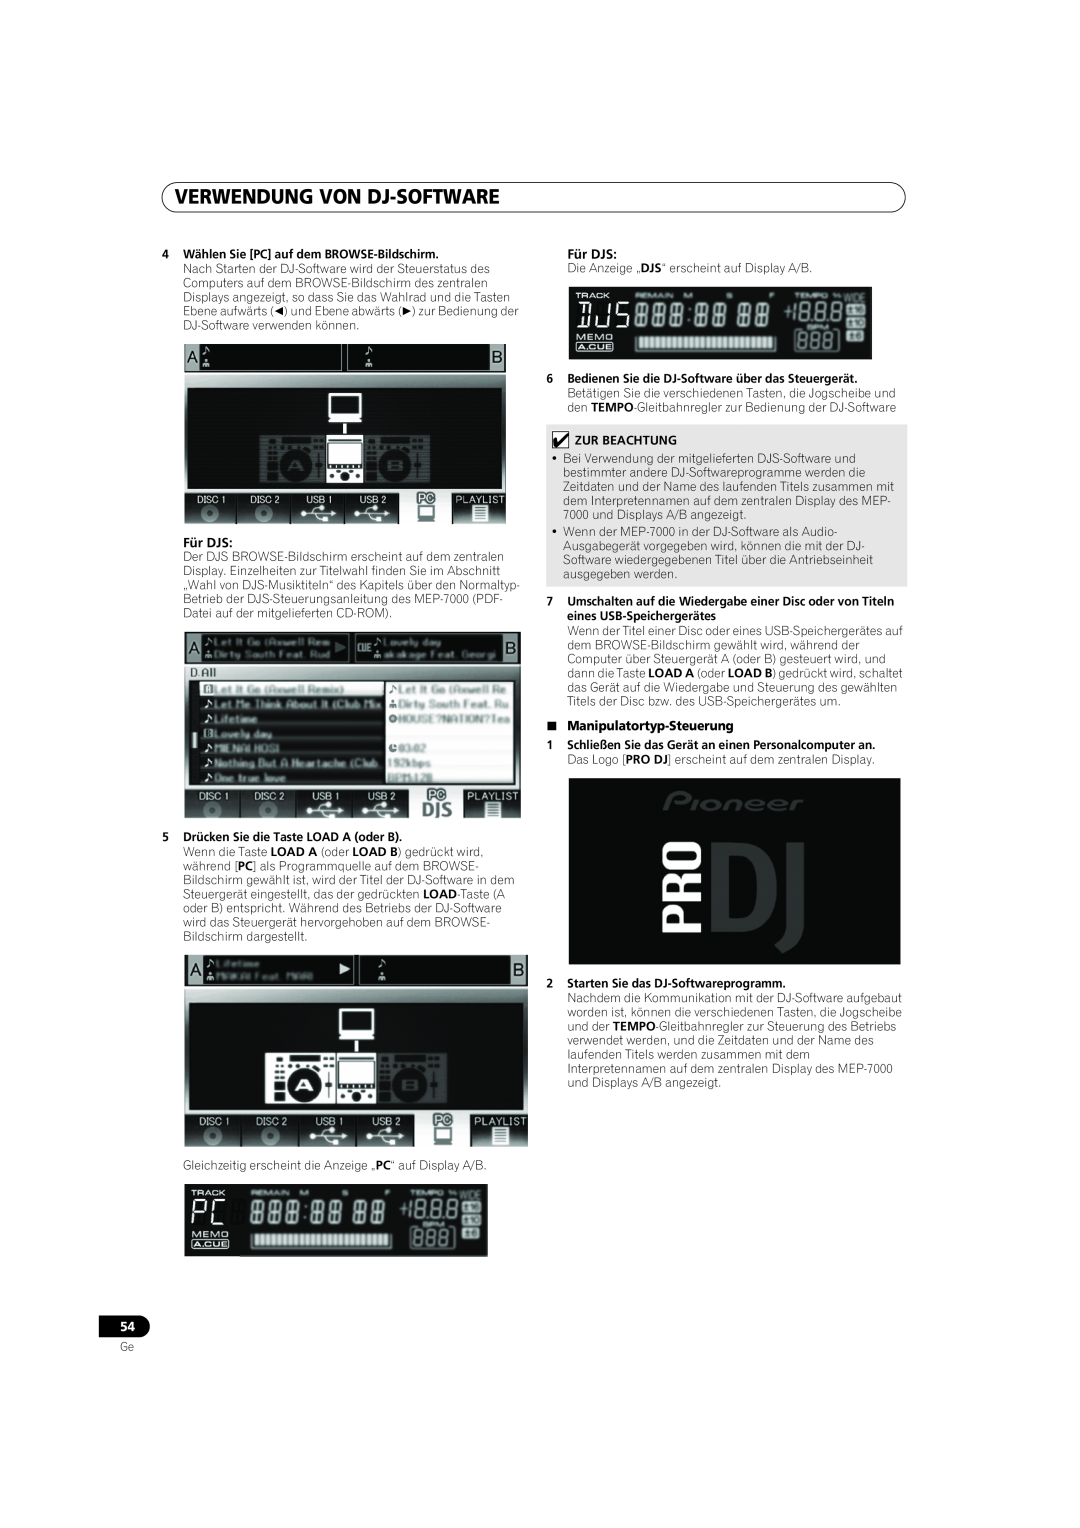 Pioneer MEP-7000 Verwendung Von Dj-Software, Für DJS, Manipulatortyp-Steuerung, 4Wählen Sie PC auf dem BROWSE-Bildschirm 